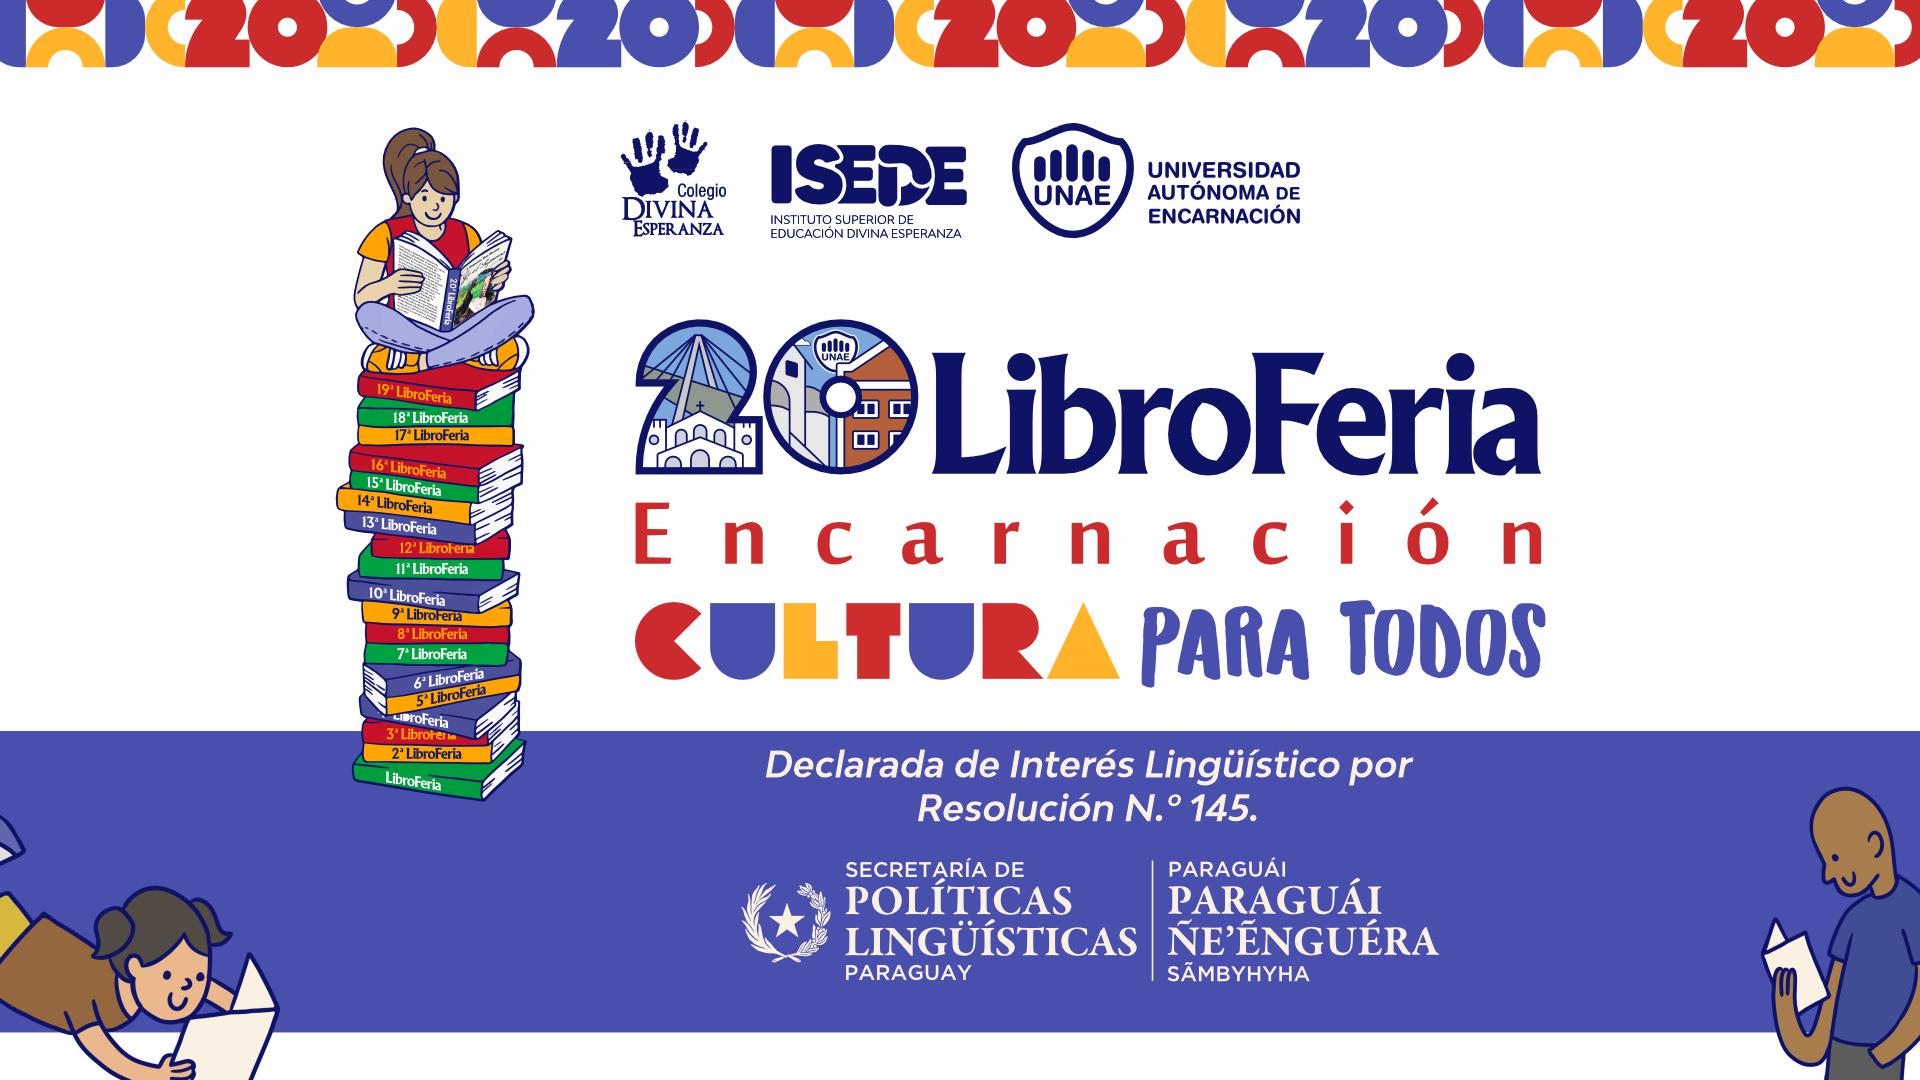 La 20ª Libroferia Encarnación “Cultura para todos” es declarada de Interés Lingüistico por la Secretaría de Políticas Lingüisticas